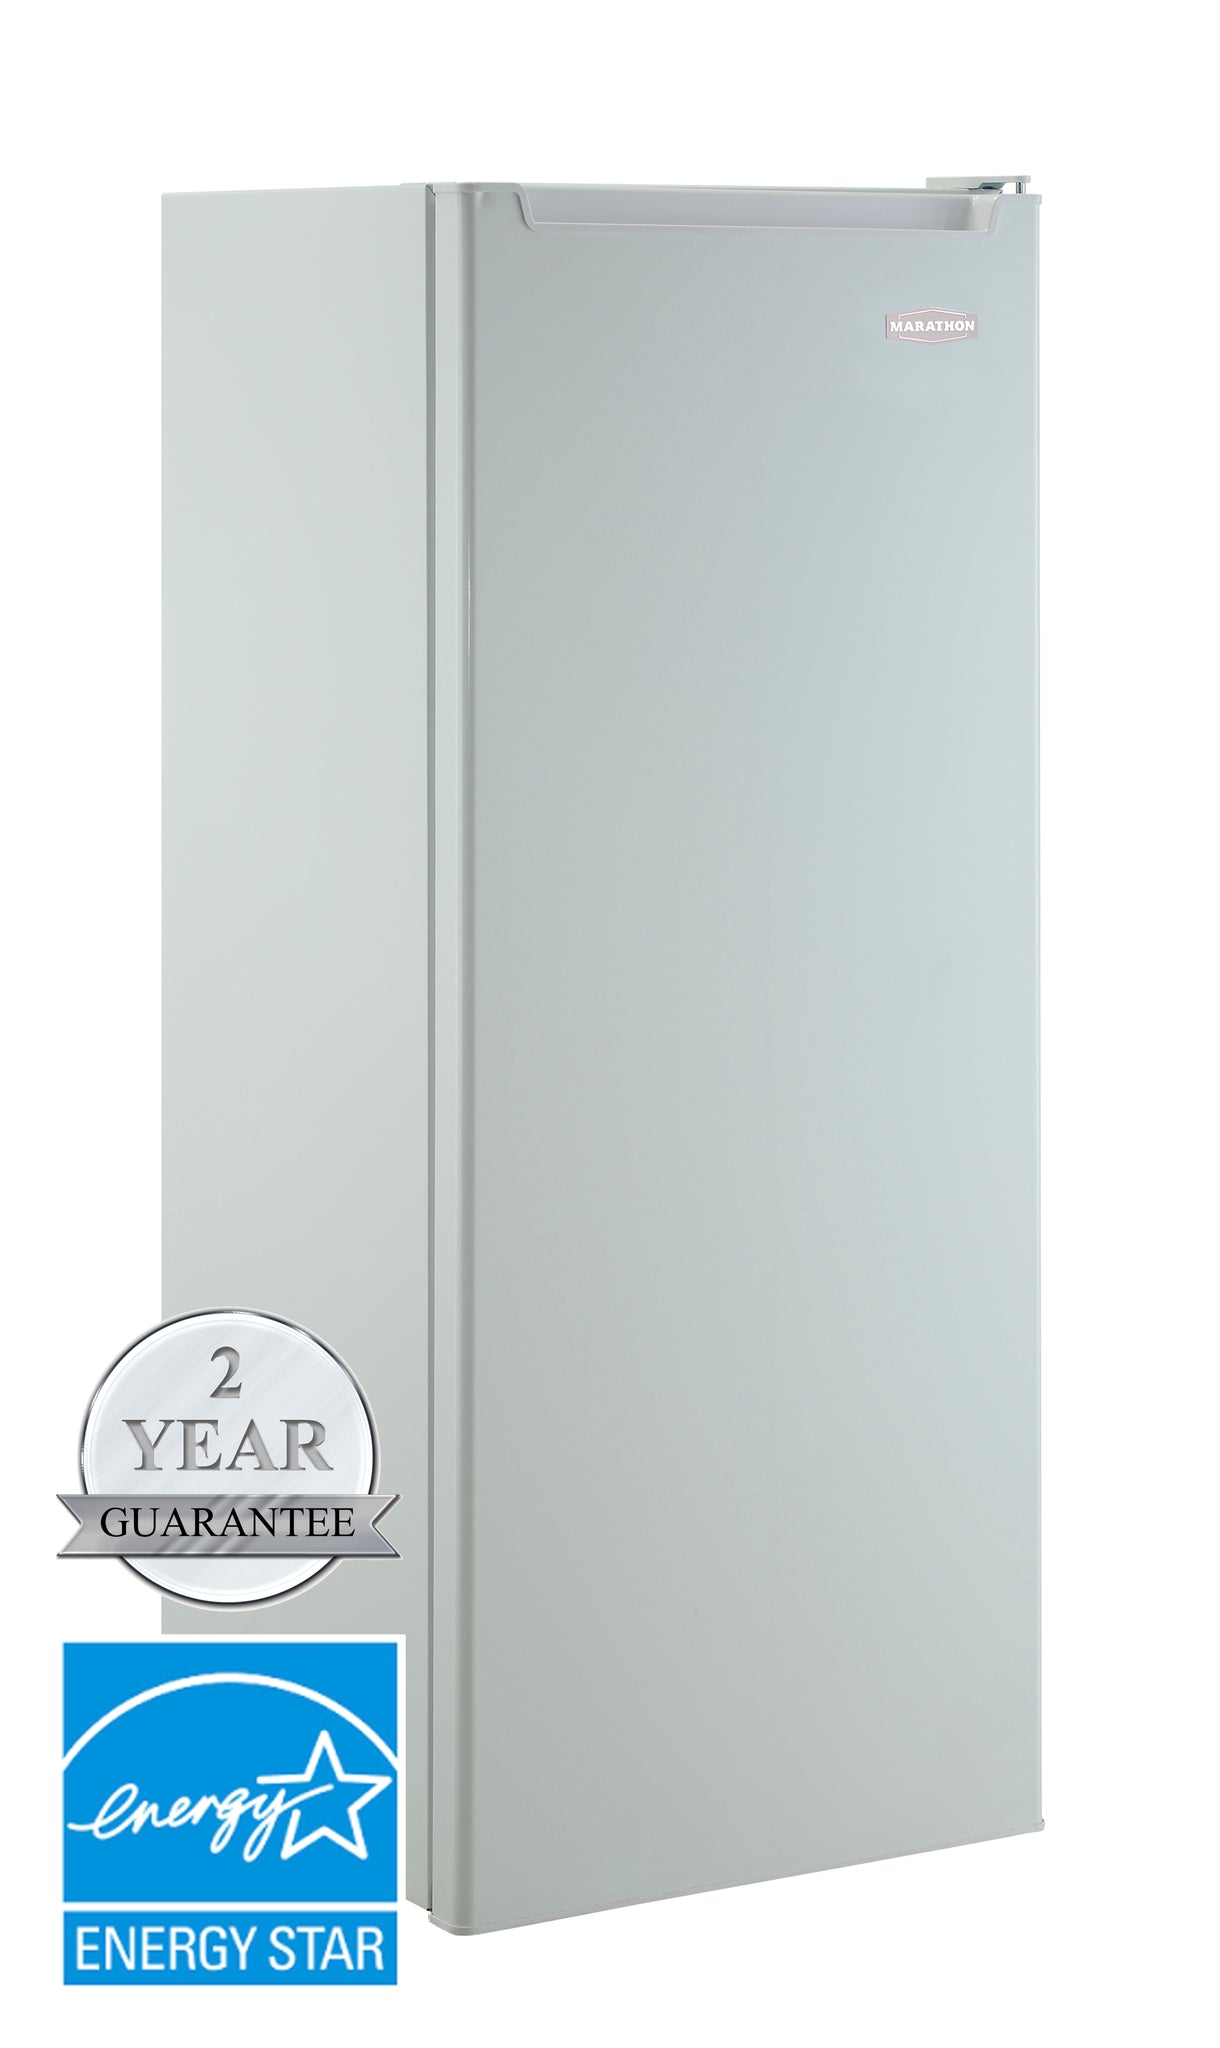 Marathon - 21.7 Inch 9 cu. ft Side by Side Refrigerator in White - MAR86W-1